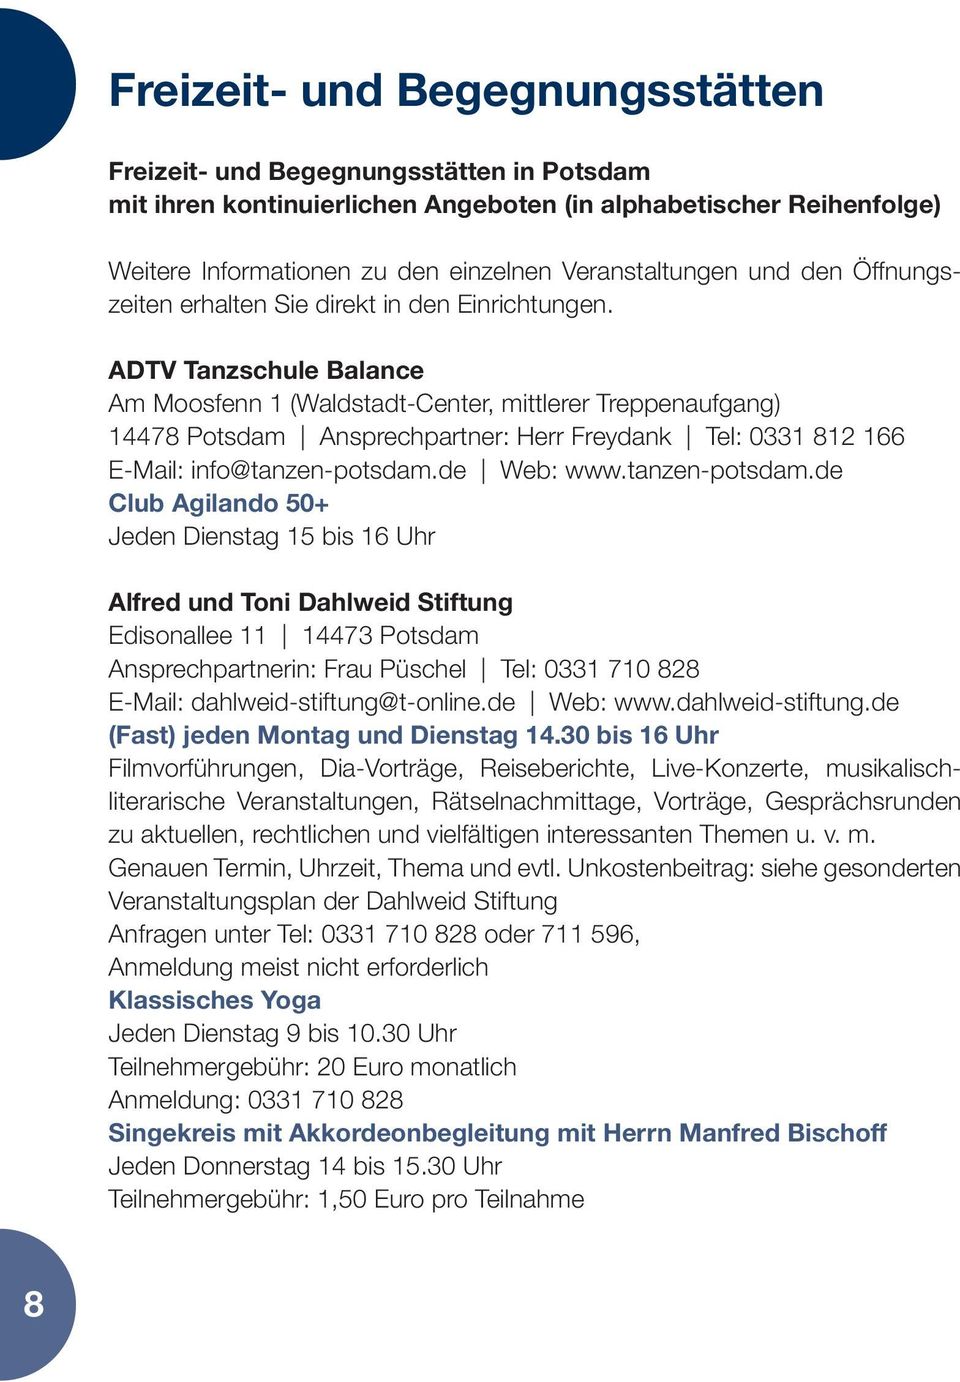 ADTV Tanzschule Balance Am Moosfenn 1 (Waldstadt-Center, mittlerer Treppenaufgang) 14478 Potsdam Ansprechpartner: Herr Freydank Tel: 0331 812 166 E-Mail: info@tanzen-potsdam.de Web: www.